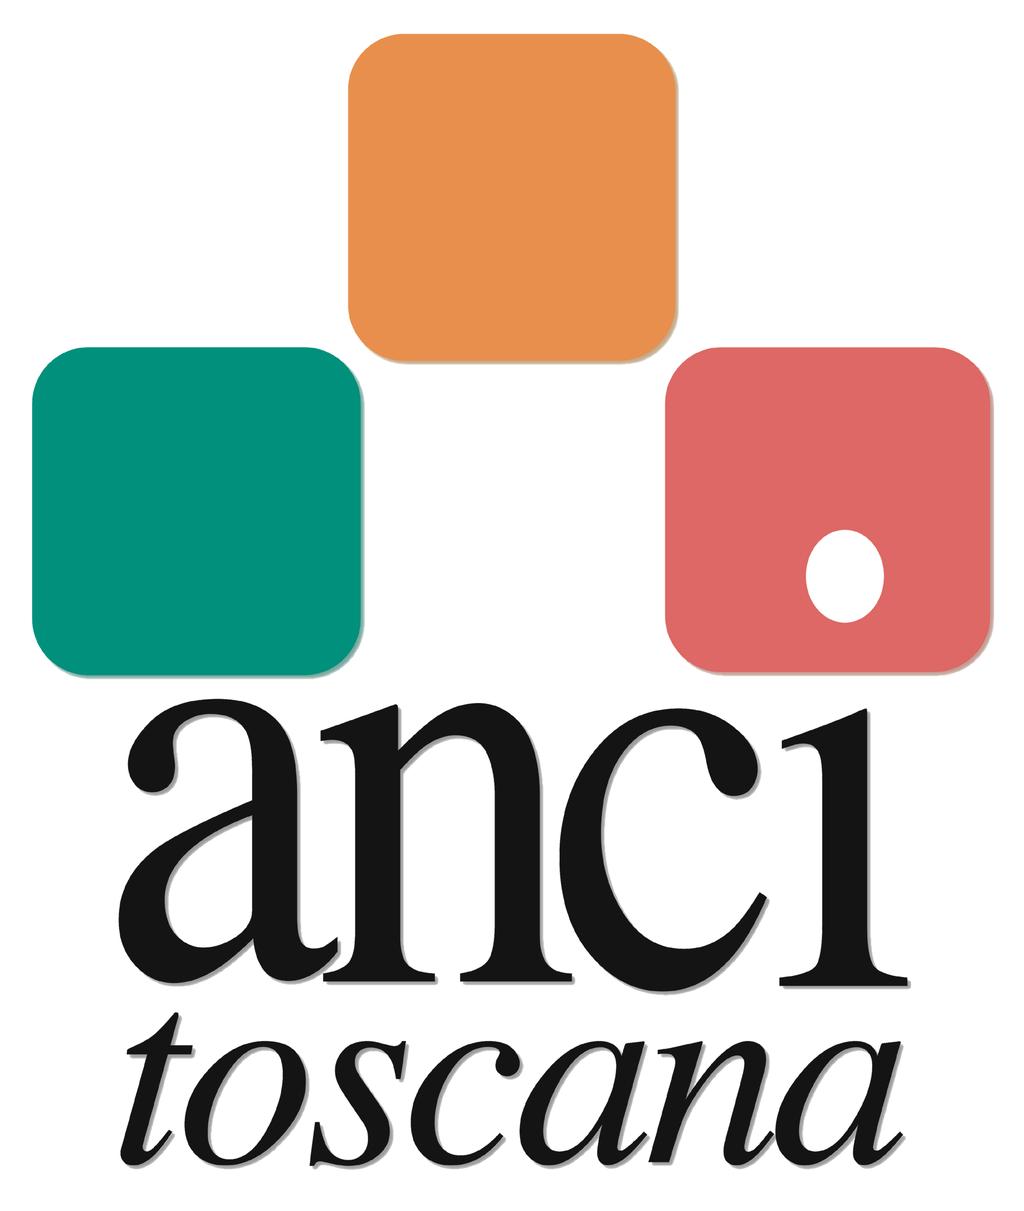 Avviso pubblico per il conferimento di un (1) incarico professionale presso ANCI Toscana per lo svolgimento di attività di supporto tecnico all implementazione del Progetto INTENSE, finanziato nell